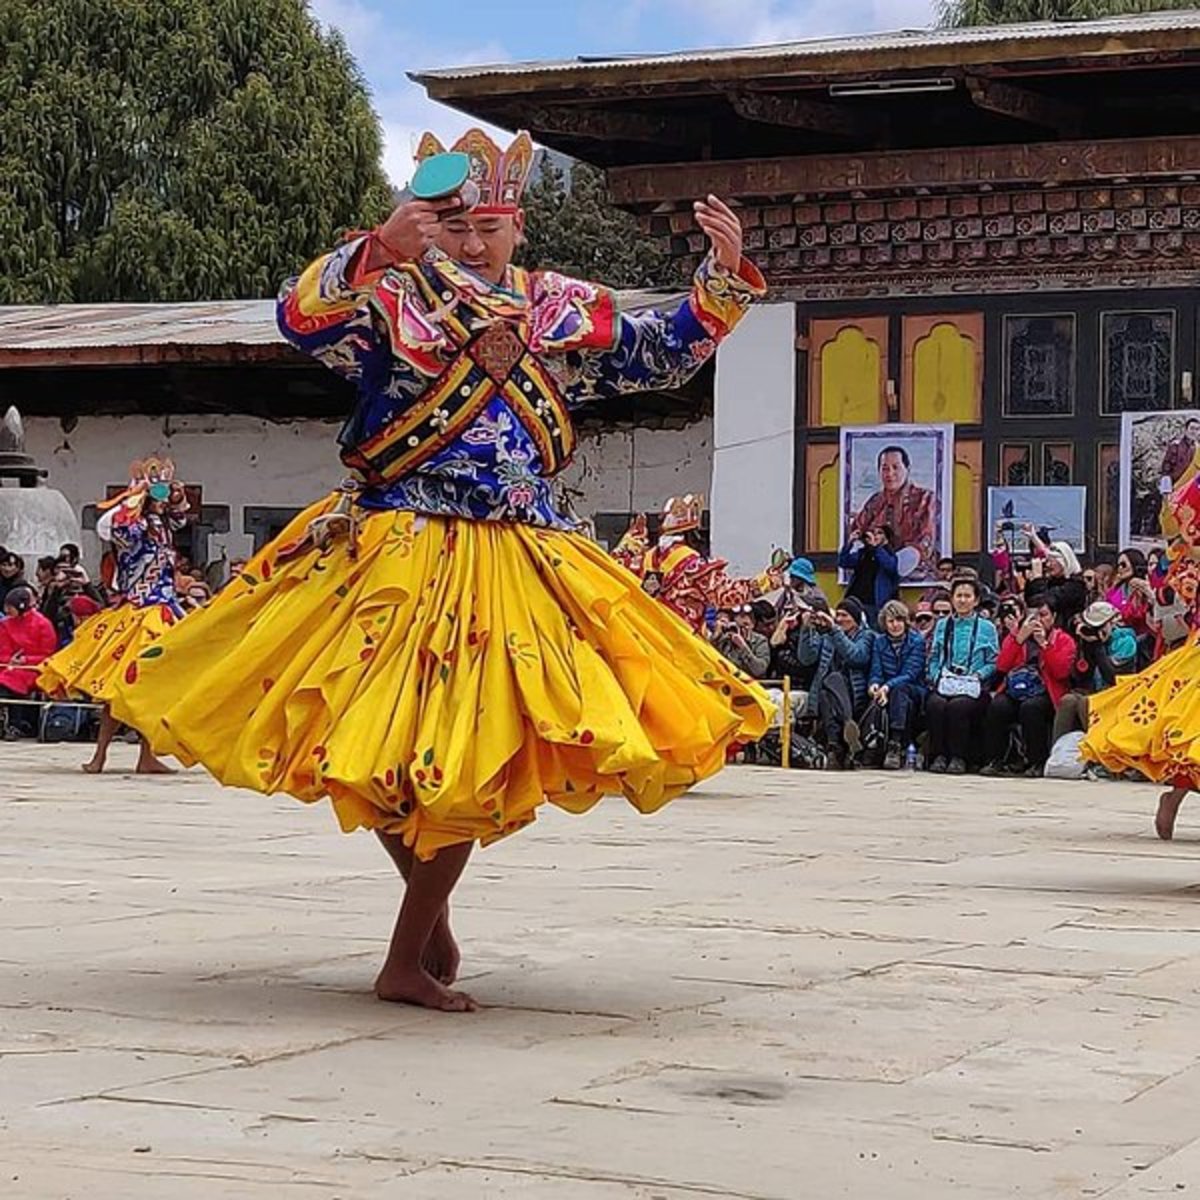 Crane Festival, Ganteng, Bhutan travel guide